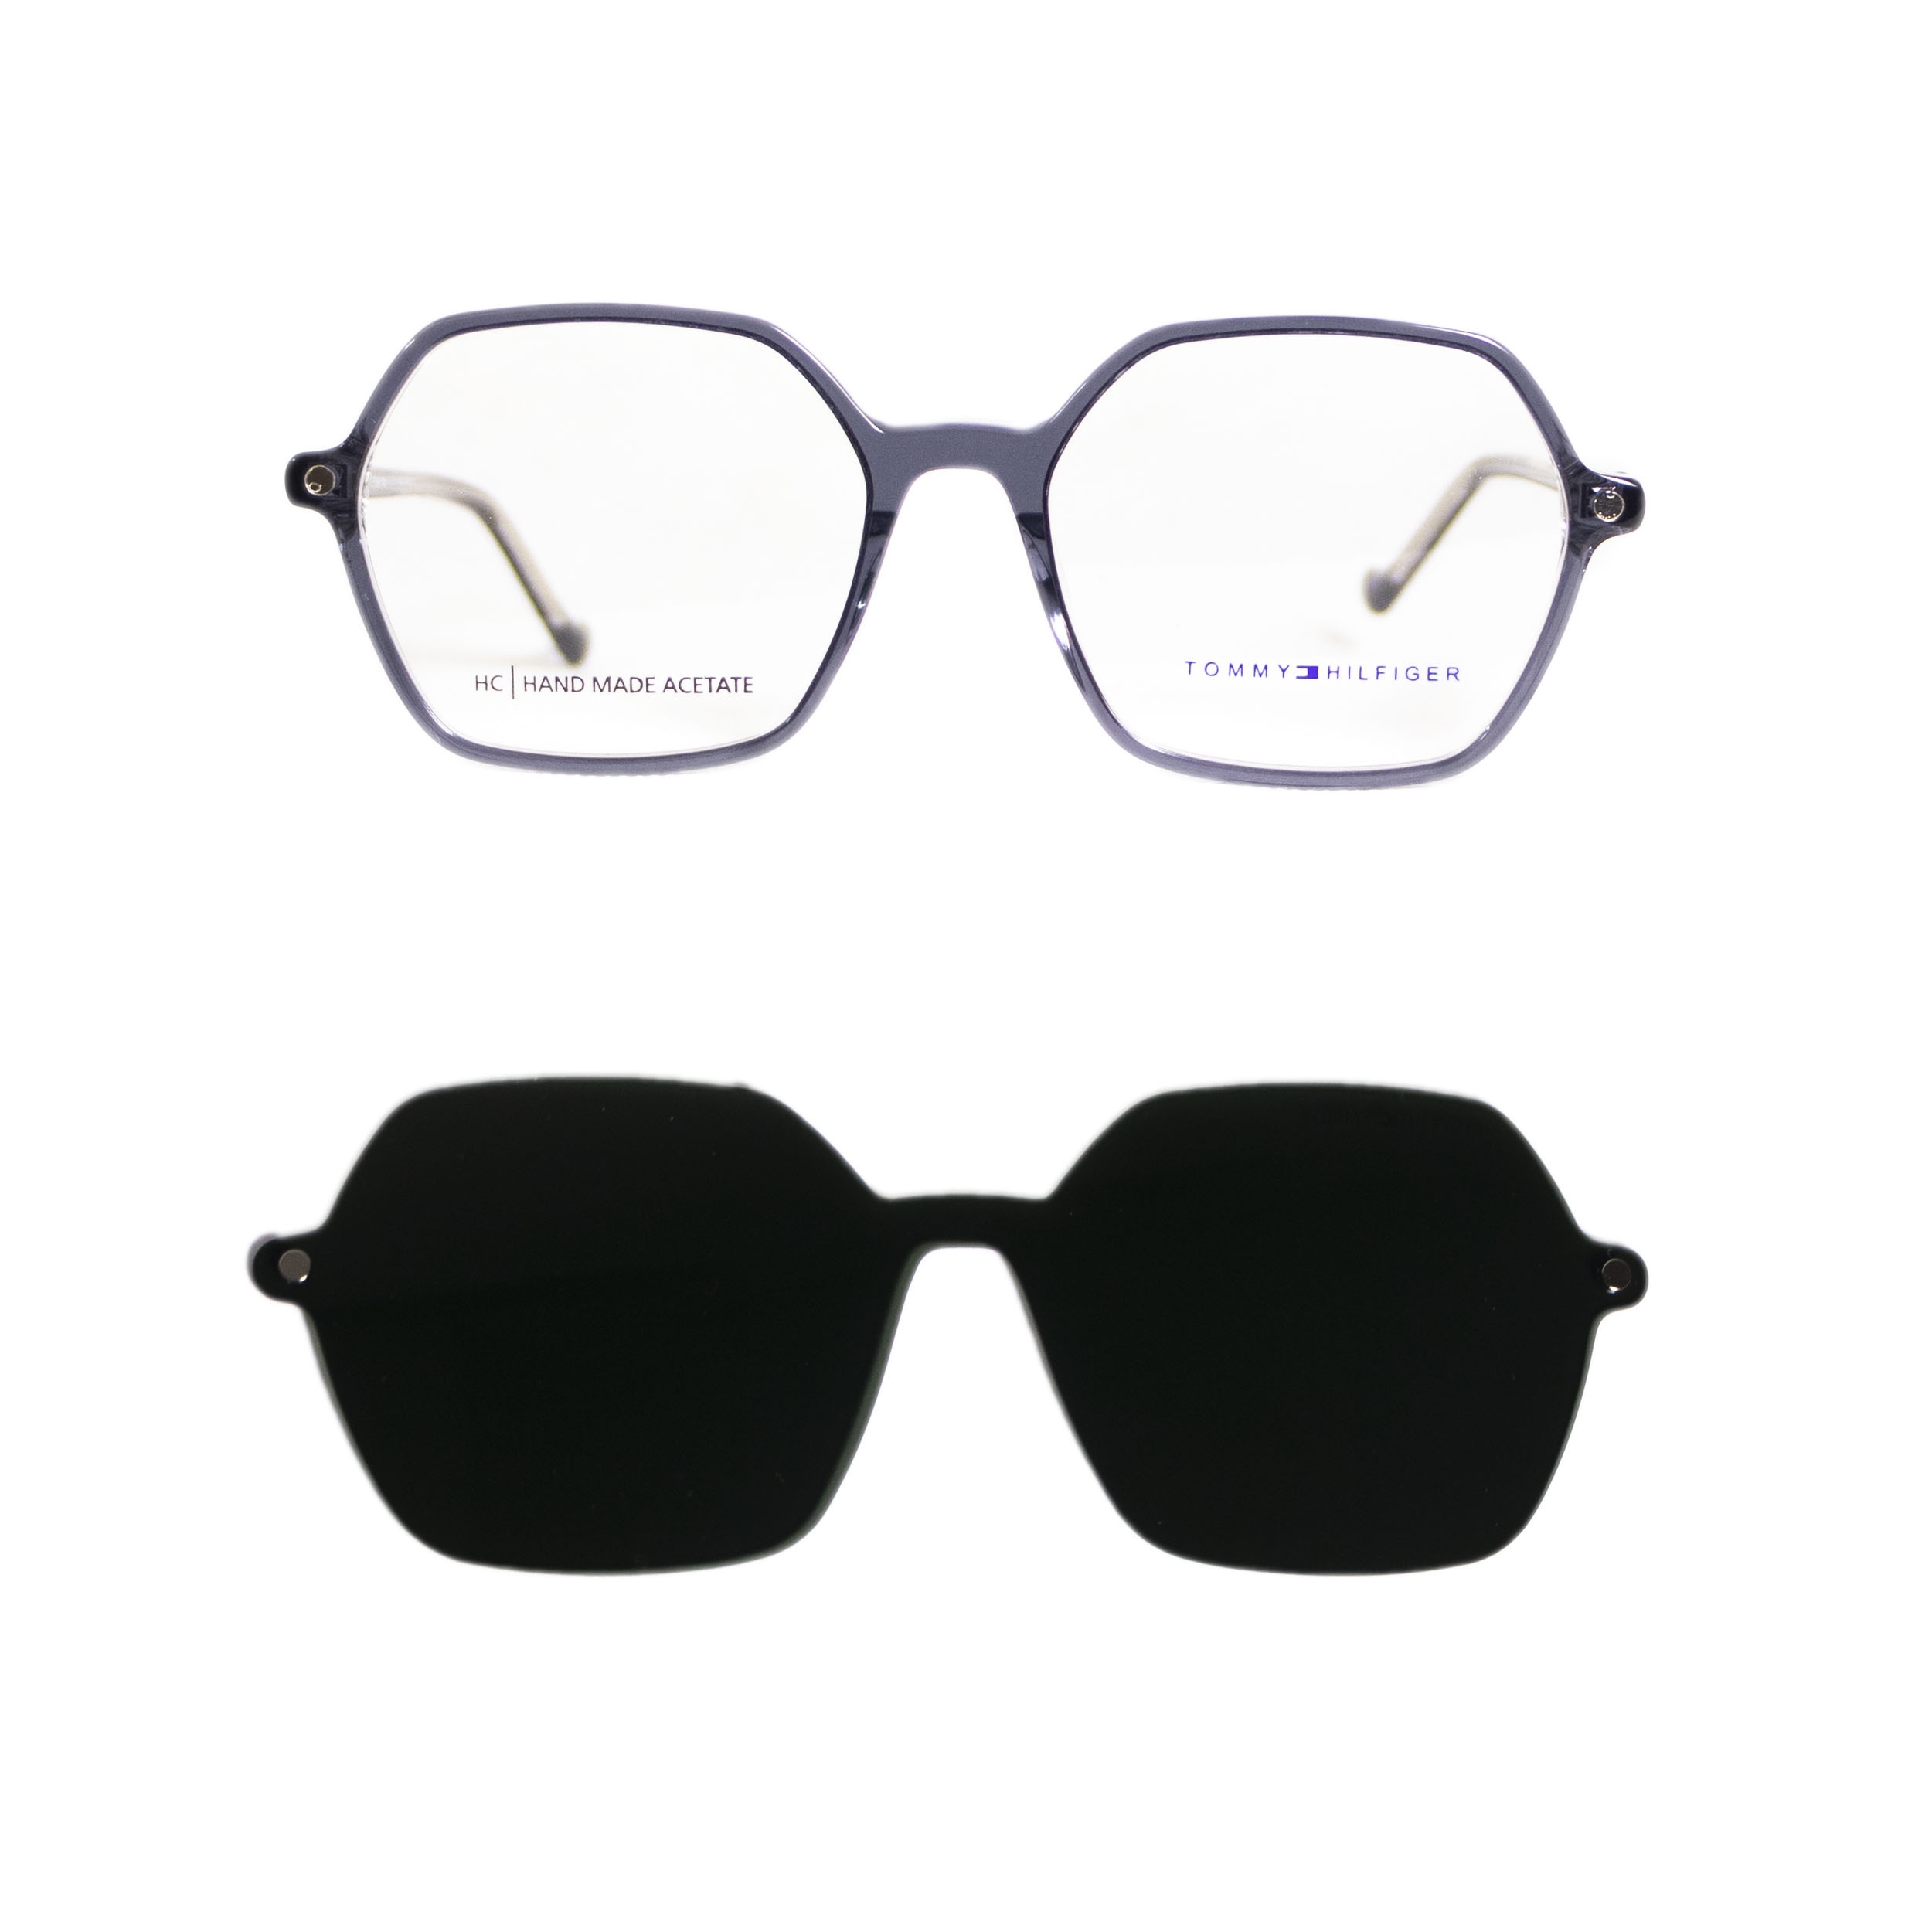 فریم عینک طبی تامی هیلفیگر مدل 99906 C6 به همراه کاور آفتابی